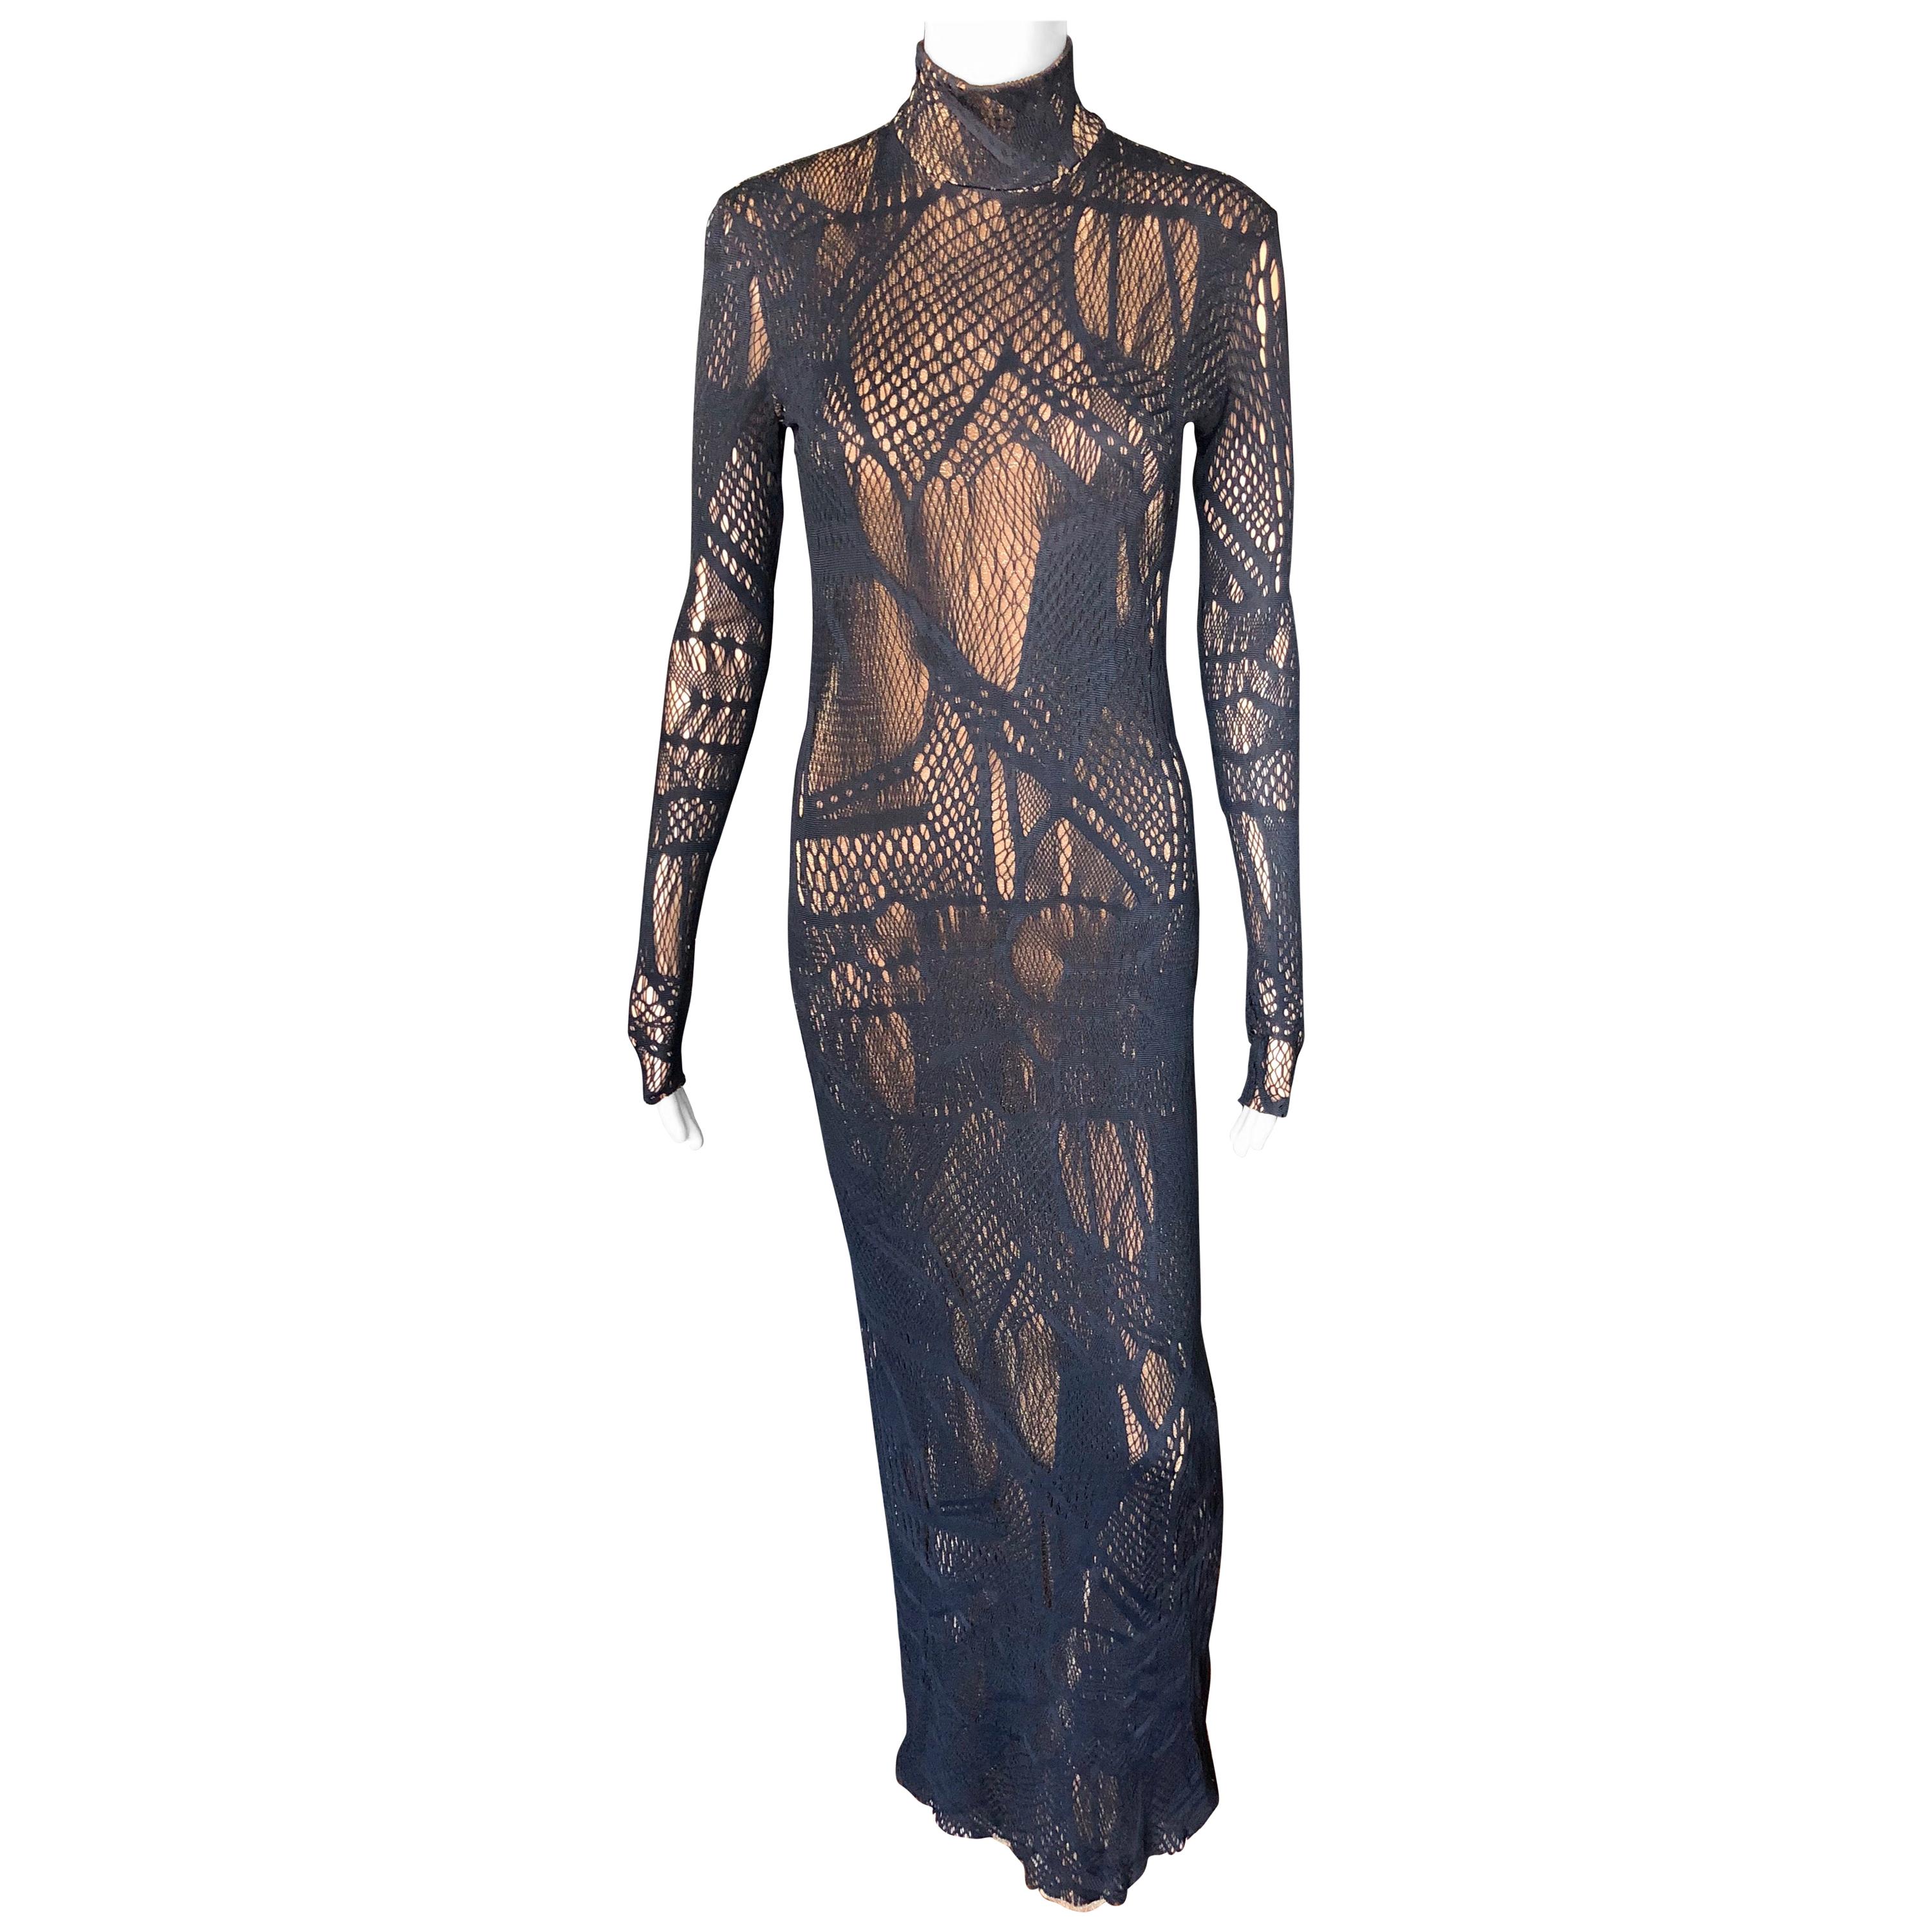 Fishnet Dress